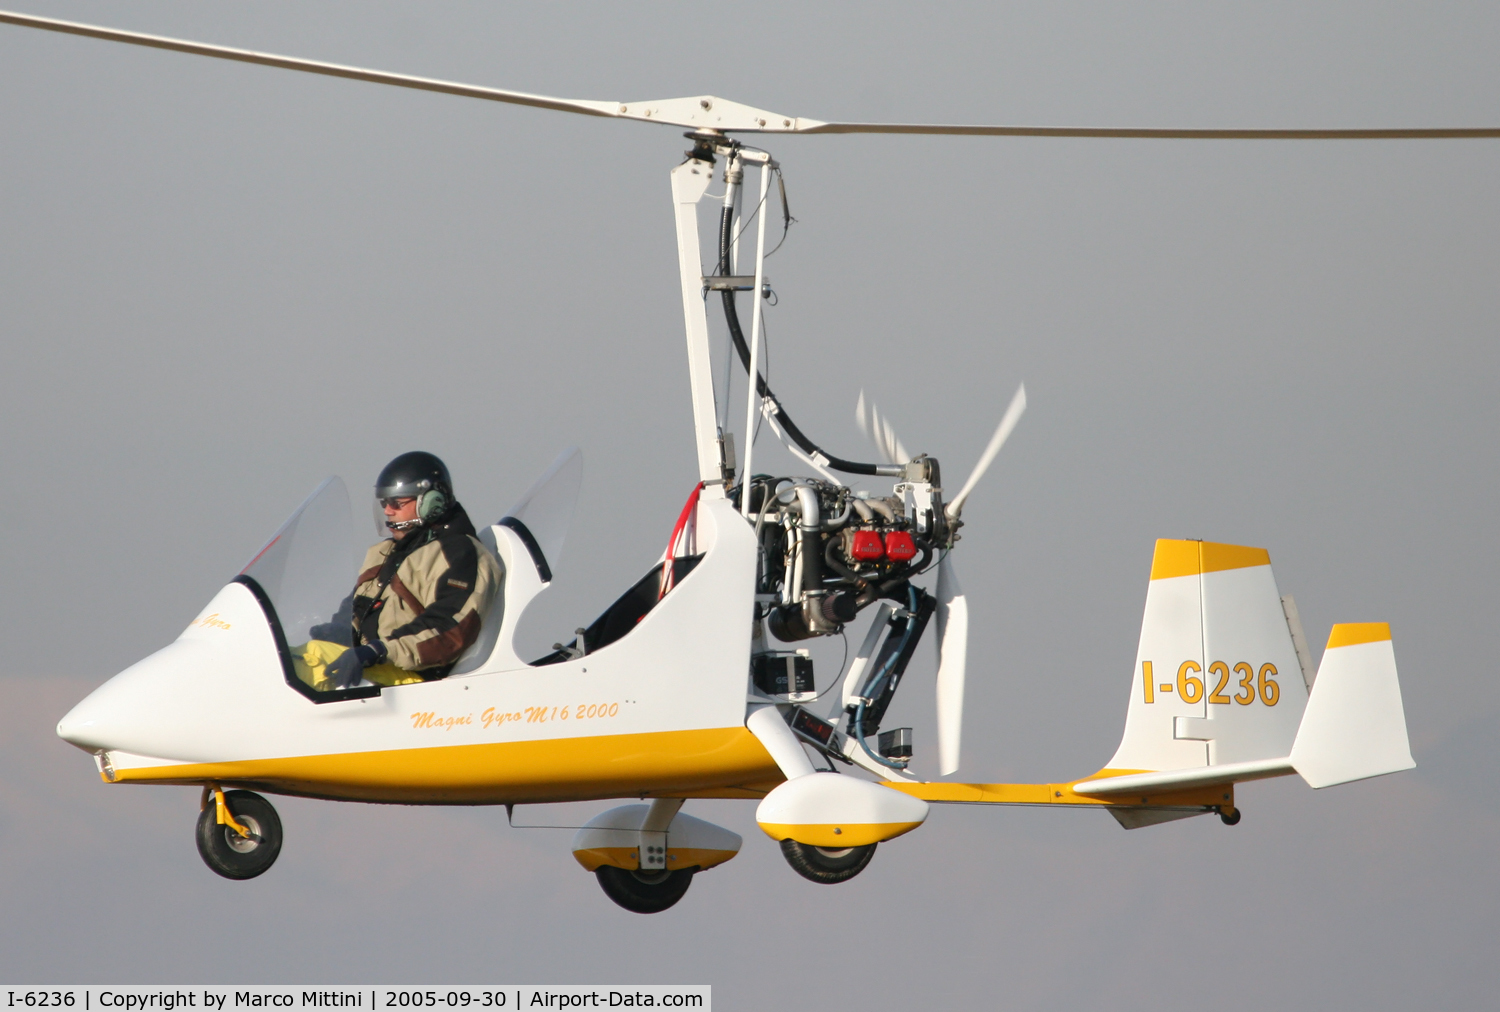 I-6236, M M-16 Tandem Trainer, On Casaleggio airstripe